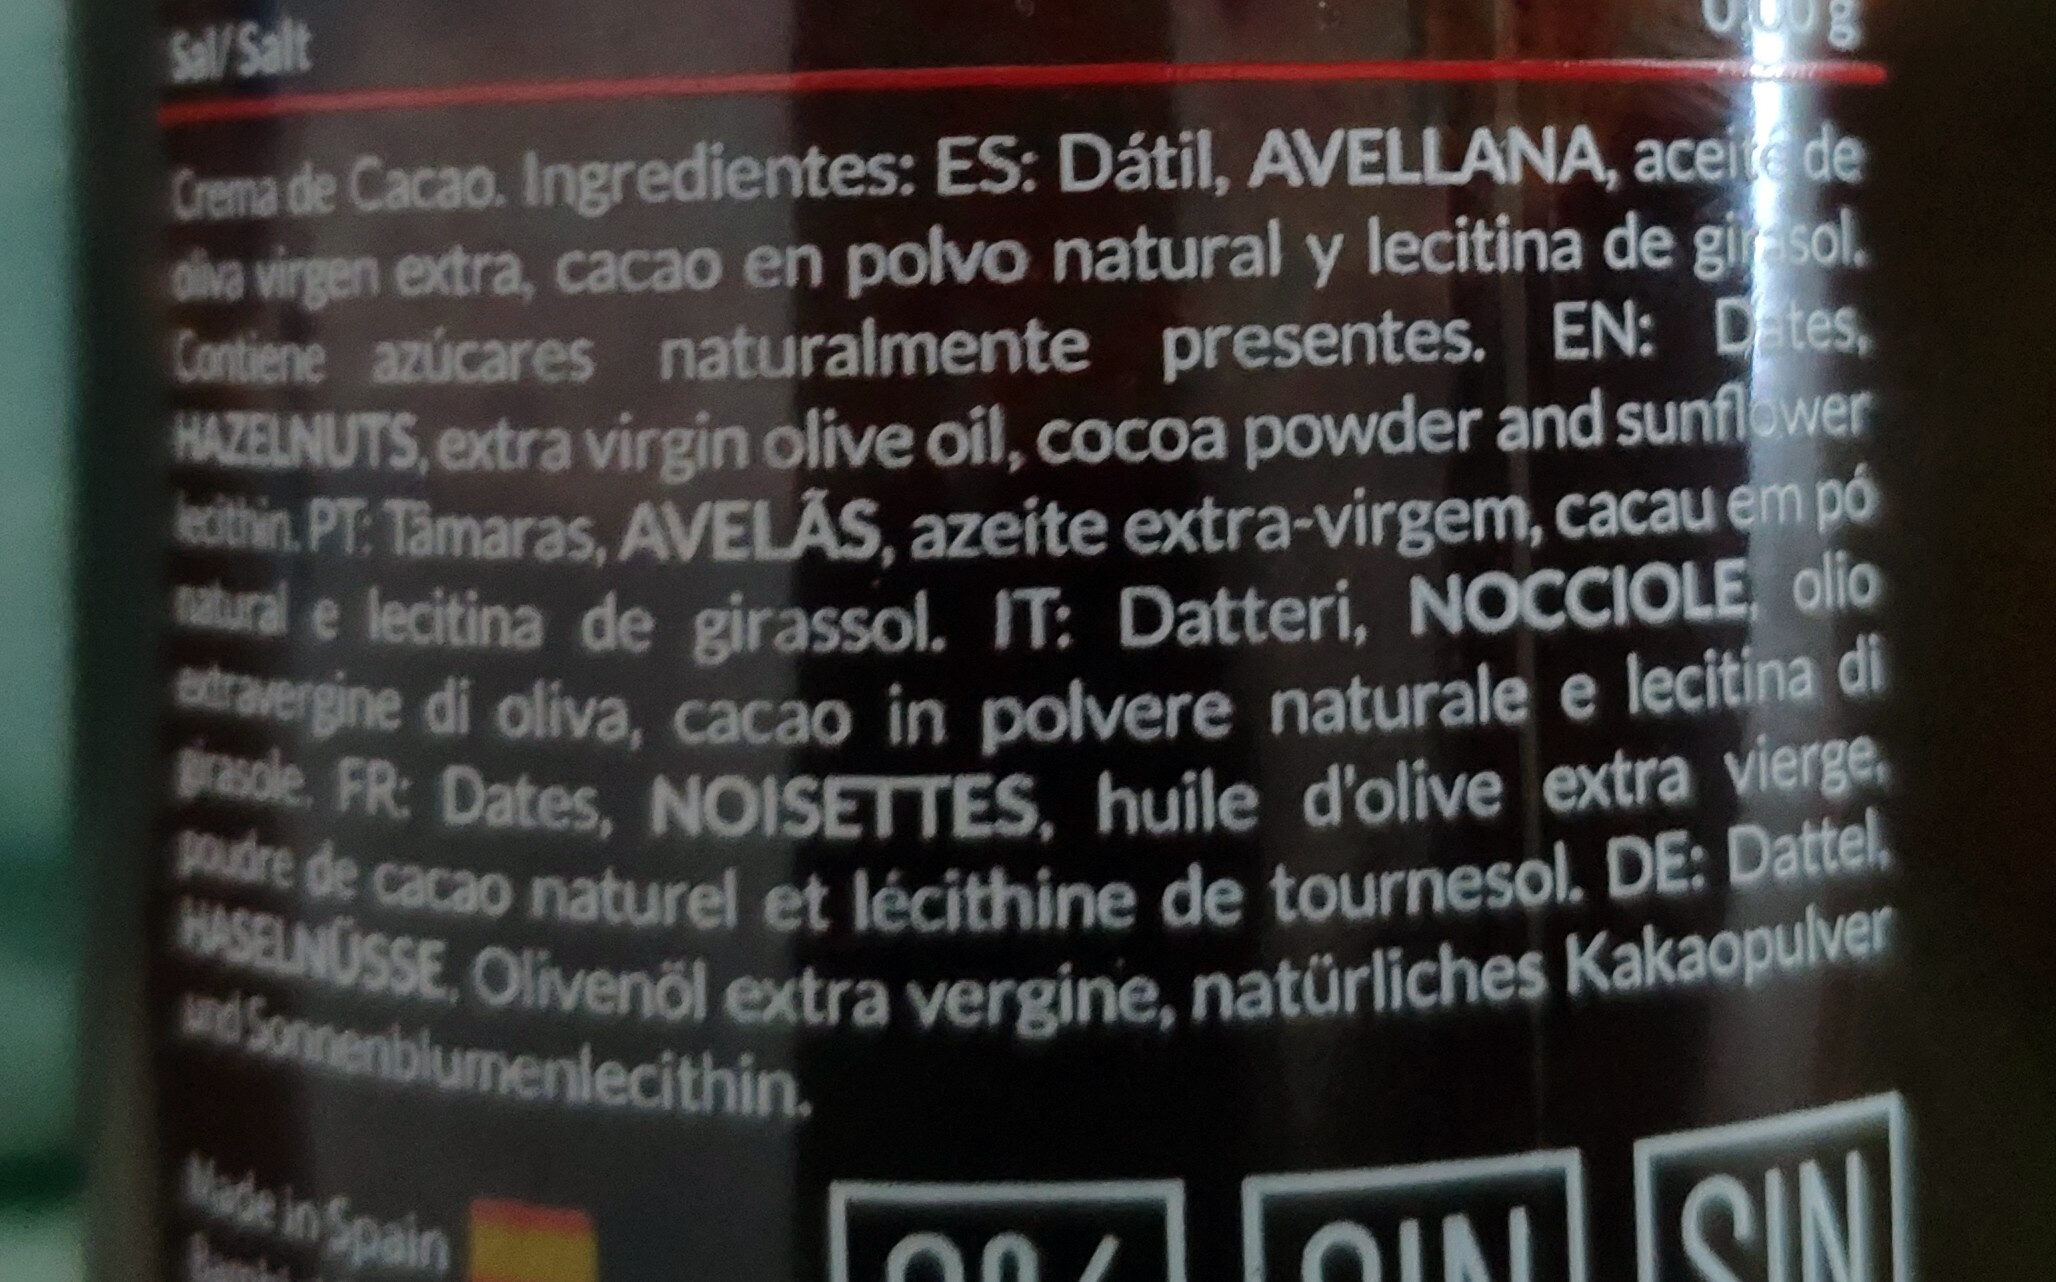 Crema de cacao - Ingredients